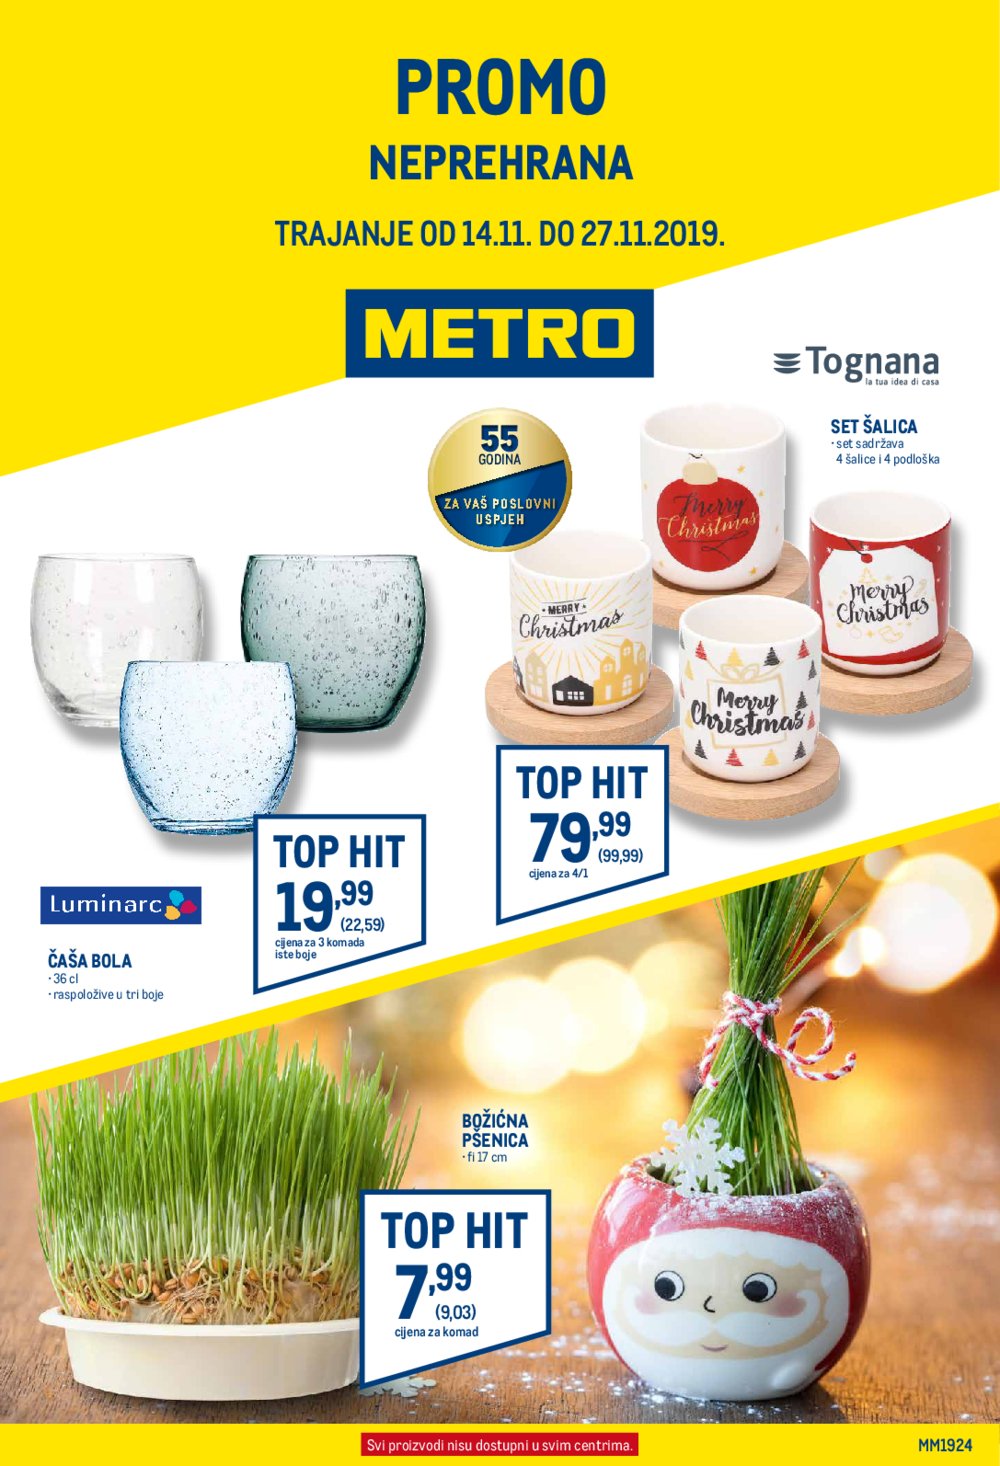 Metro katalog Neprehrana 14.11-27.11.2019.